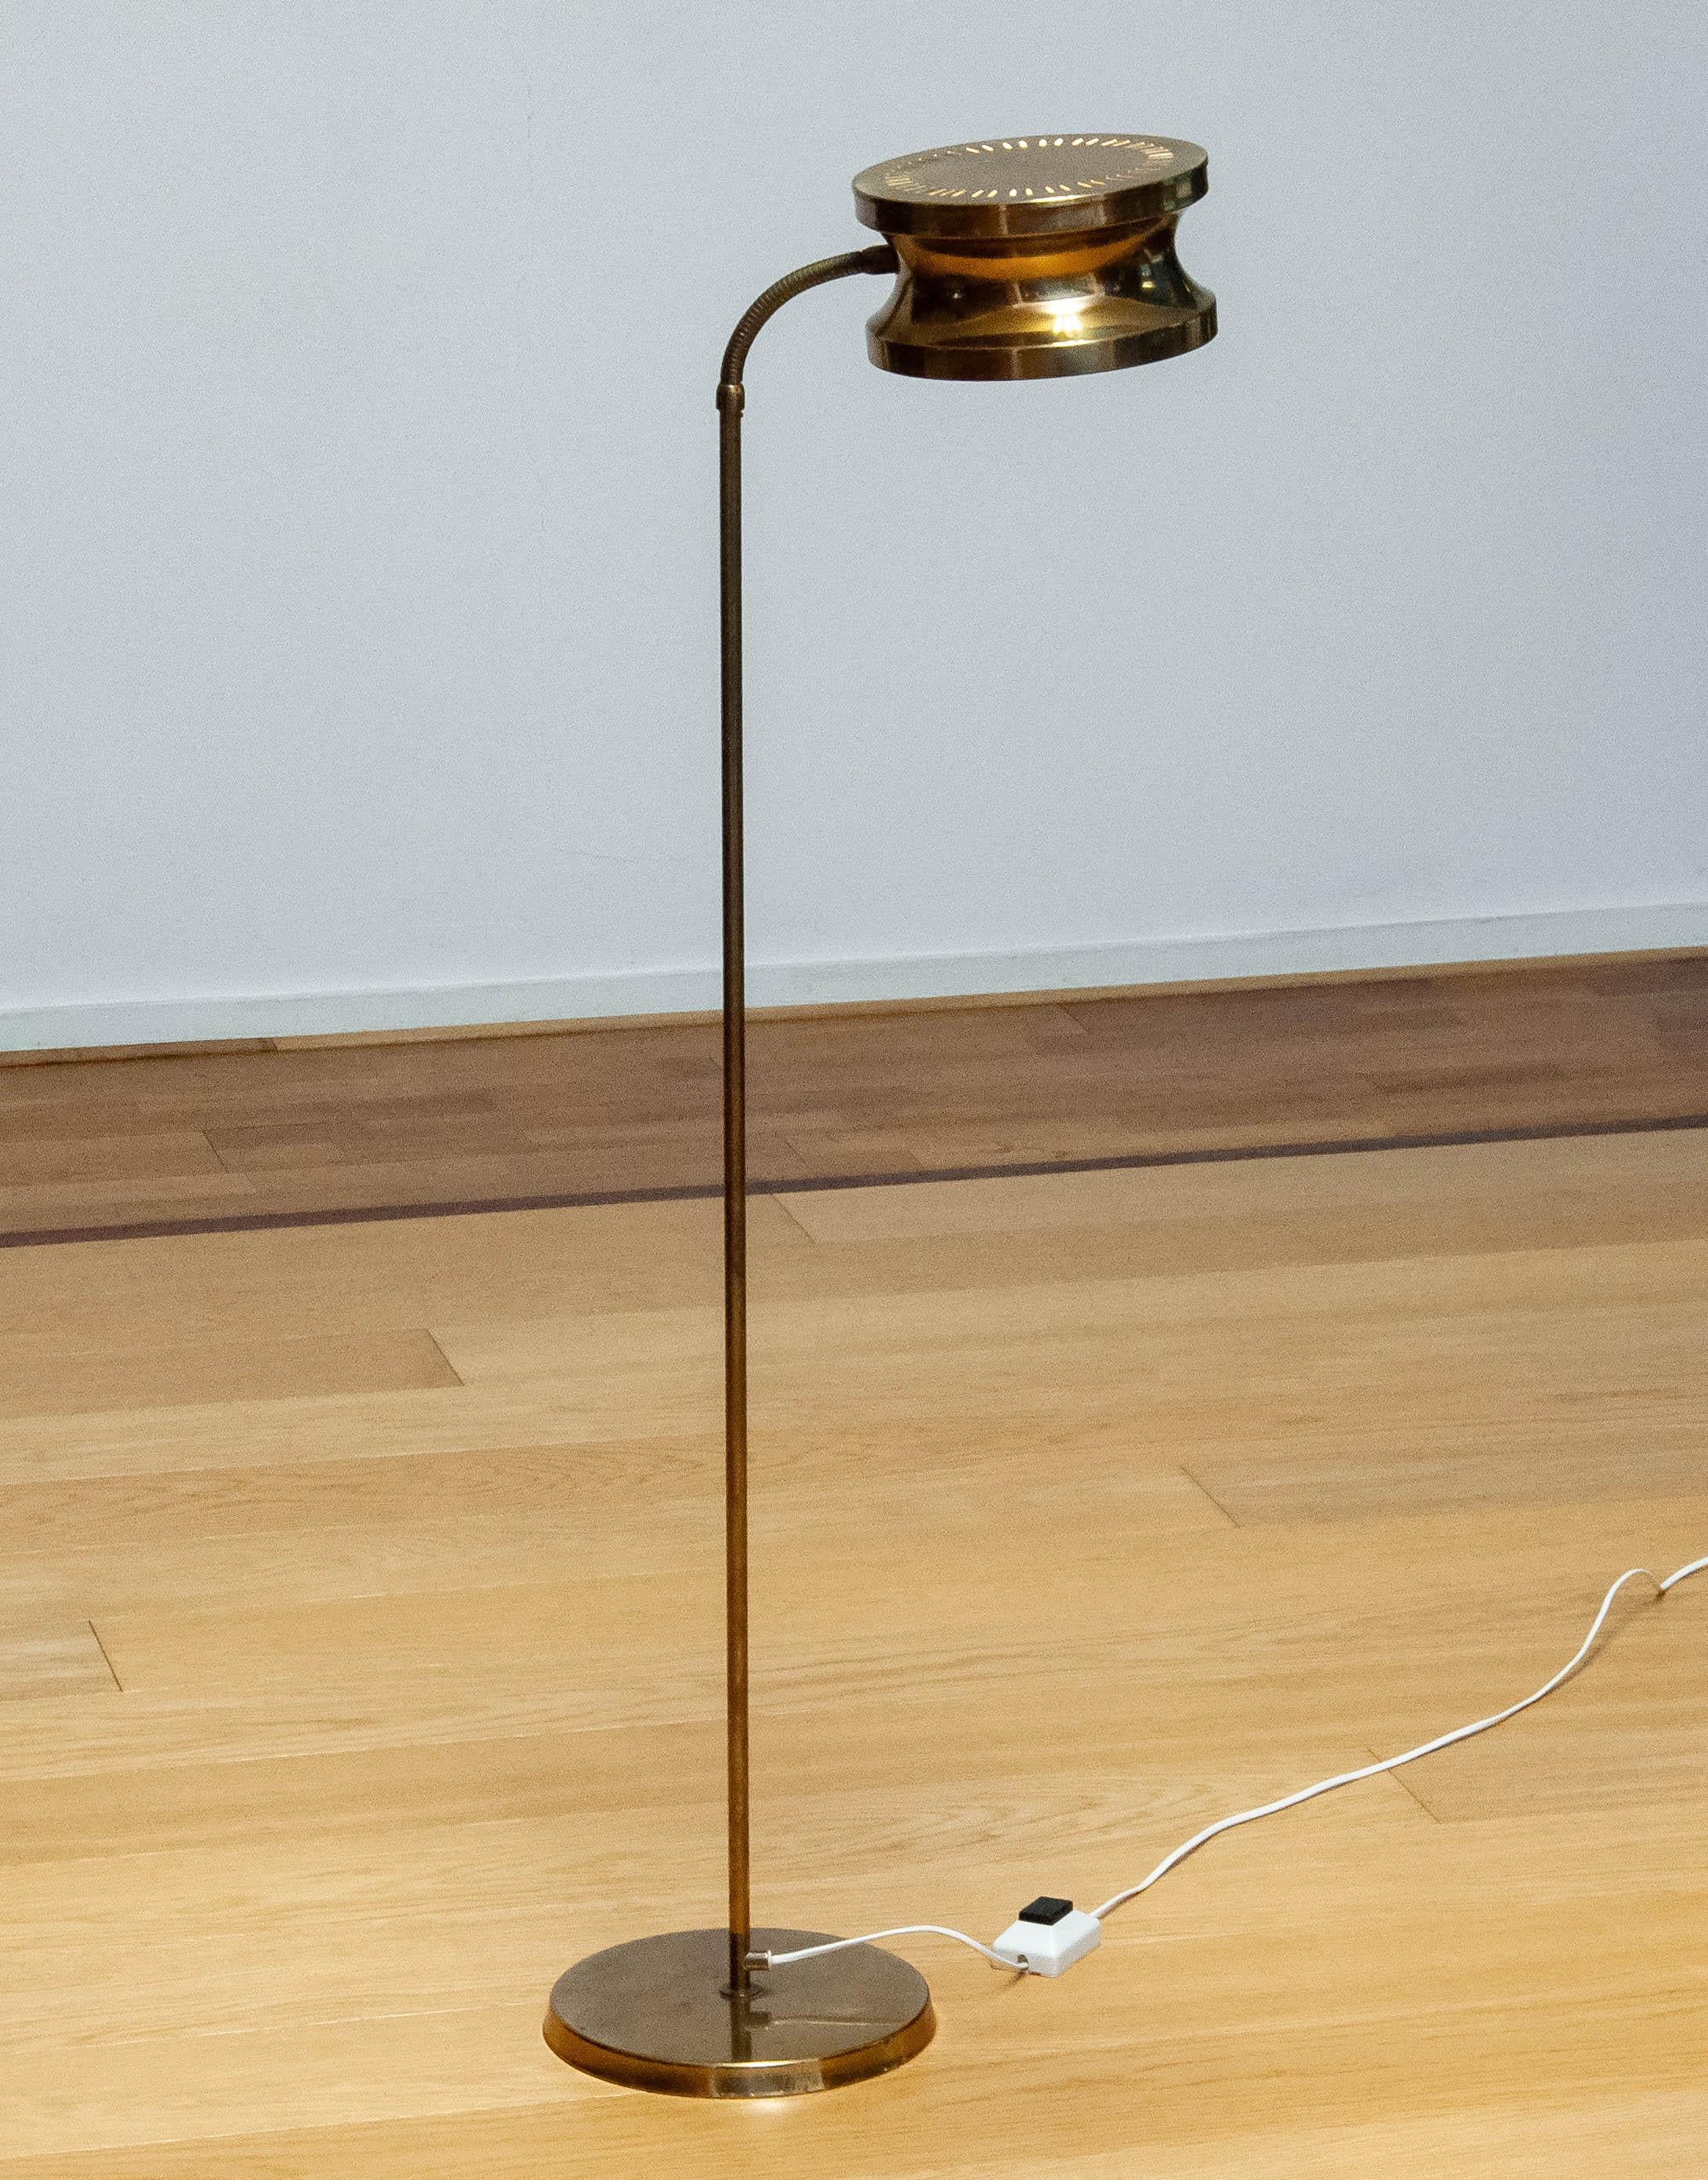 Magnifique lampadaire The Modern Scandinavian en laiton poli fabriqué en Suède dans les années 1970 par Tyringe Konsthantverk qui s'adapte à de nombreux intérieurs. Une fois allumé, l'abat-jour perforé donne à ce lampadaire son aspect